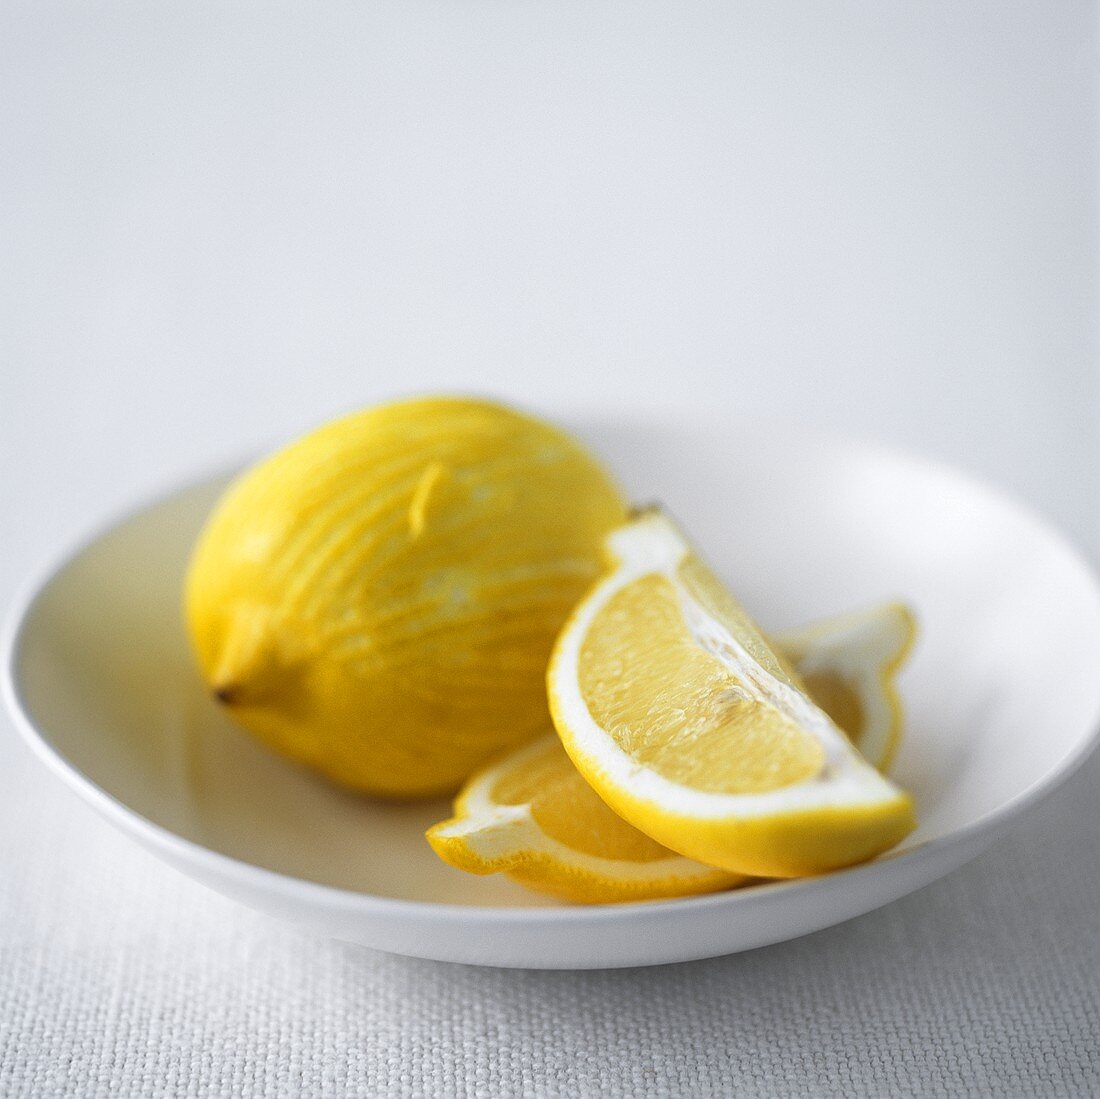 Zitronenschnitze und Zitrone in einem Schälchen